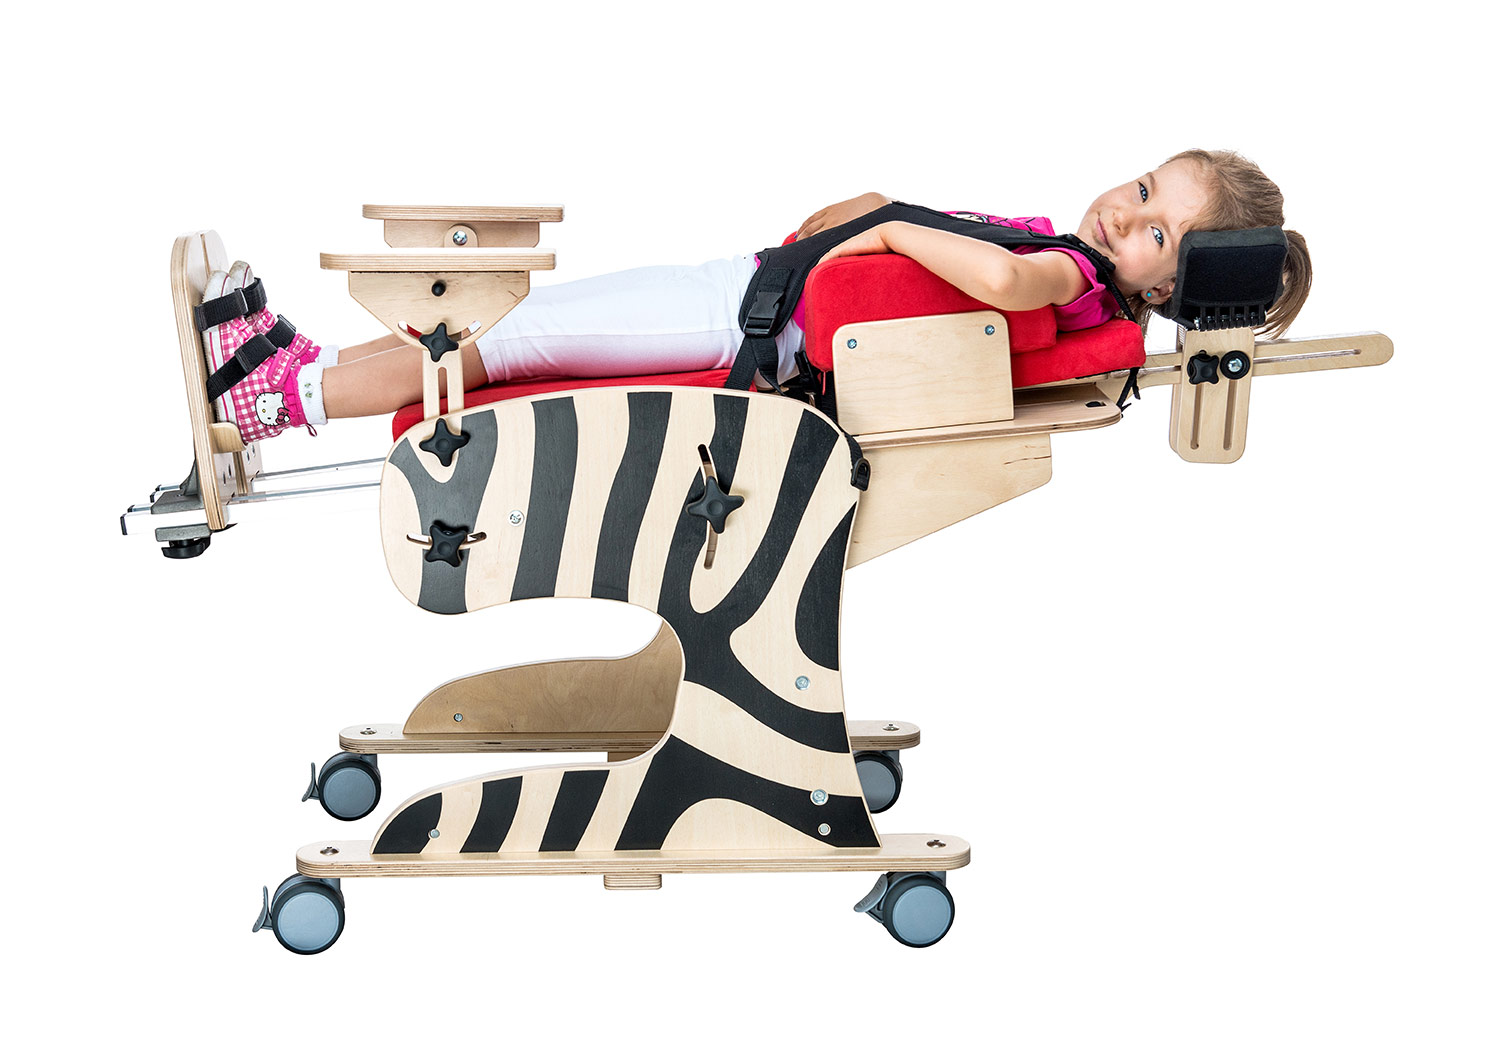 Сиденье для дцп. Реабилитационное кресло AKCESMED Зебра Инвенто. Опора для сидения Зебра для детей с ДЦП. Вертикализатор - кресло для детей с ДЦП. Стул ортопедический для детей с ДЦП СН-37.01.02.